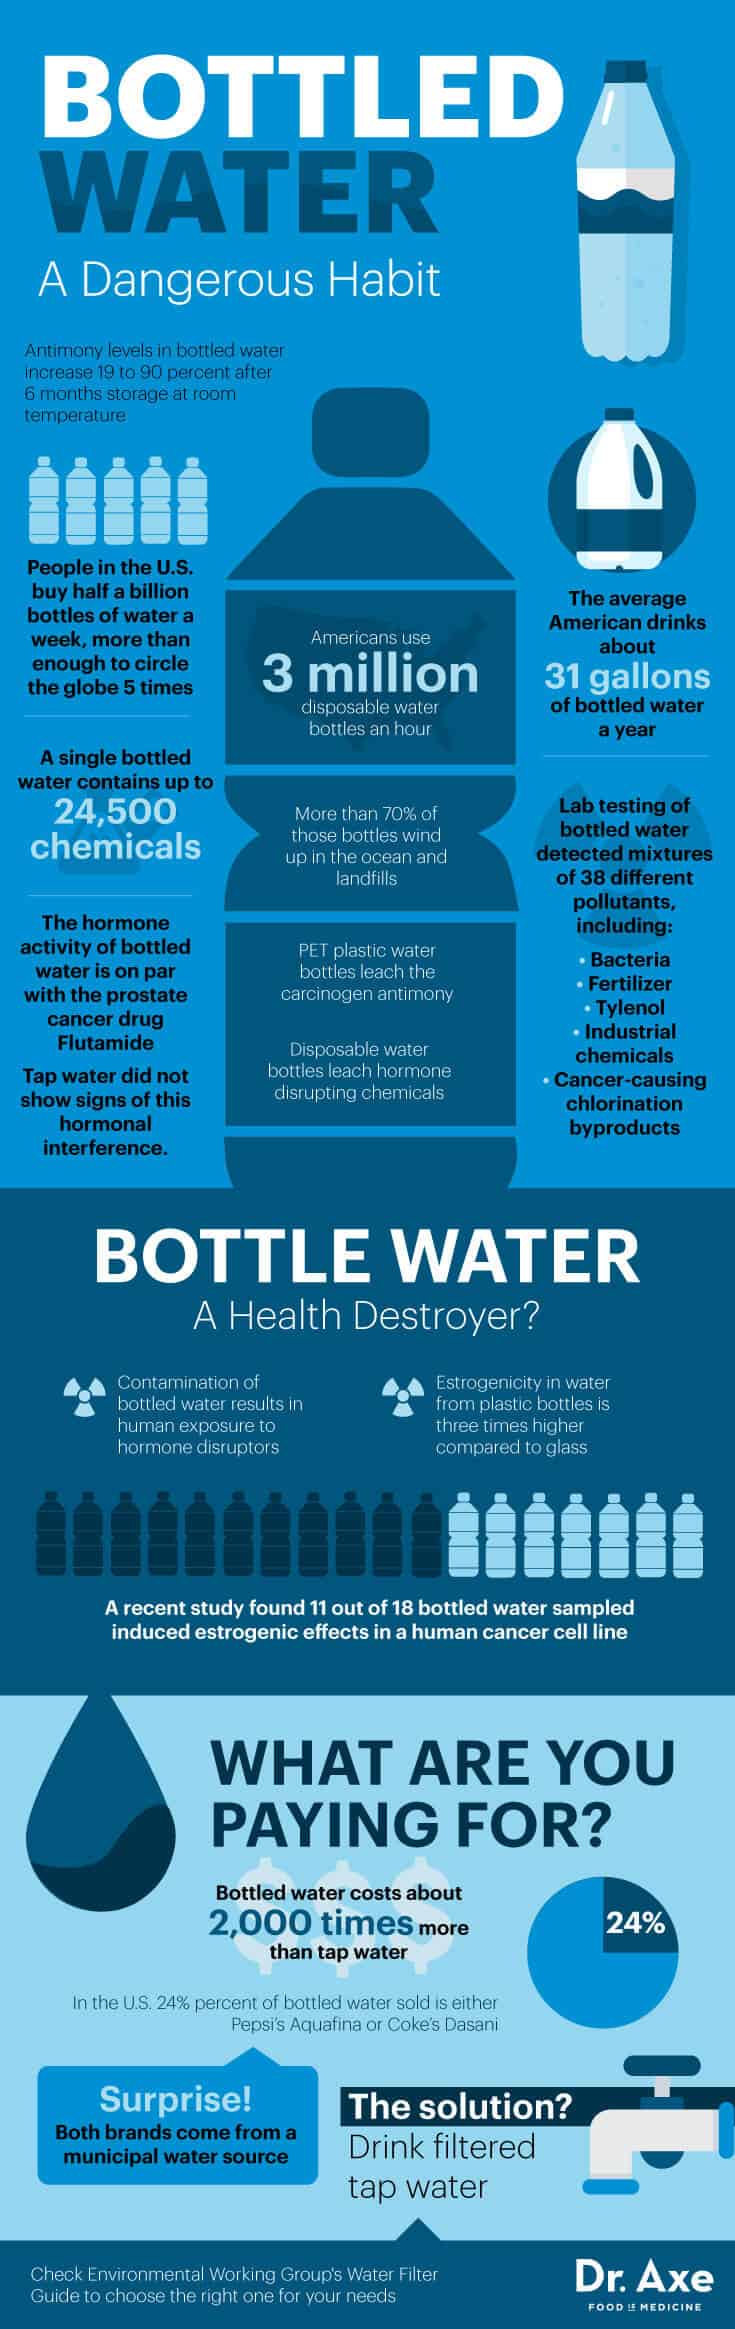 Bottled water risks - Dr. Axe